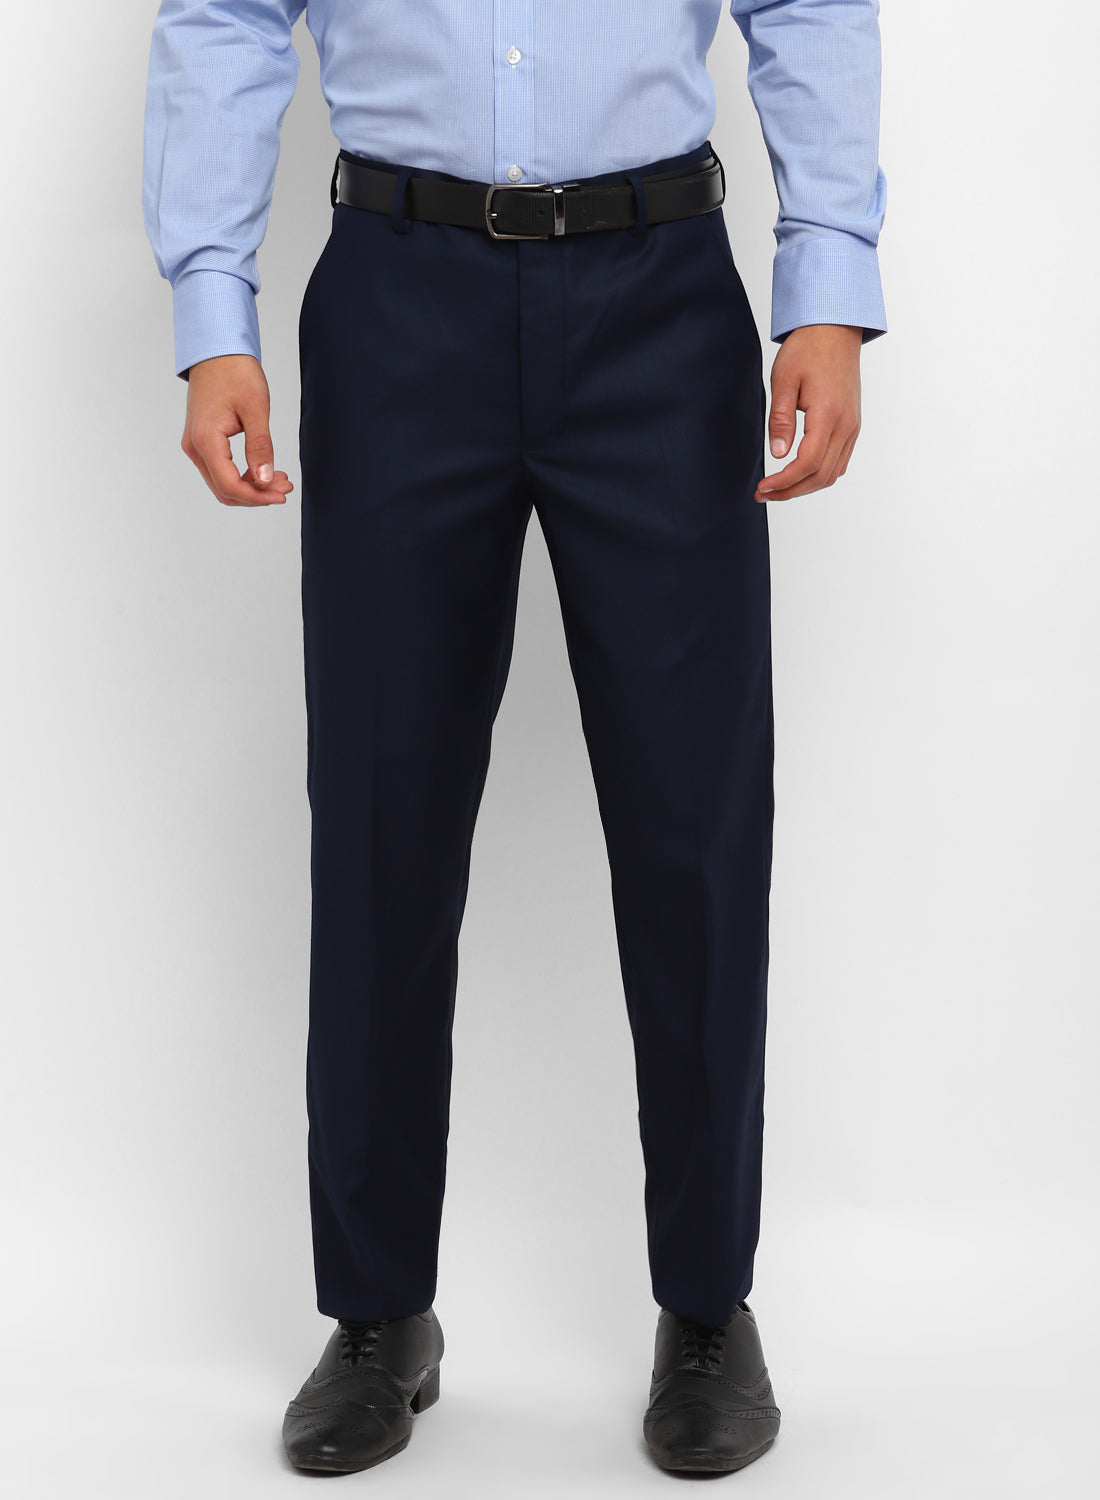 Blue Formal Trouser